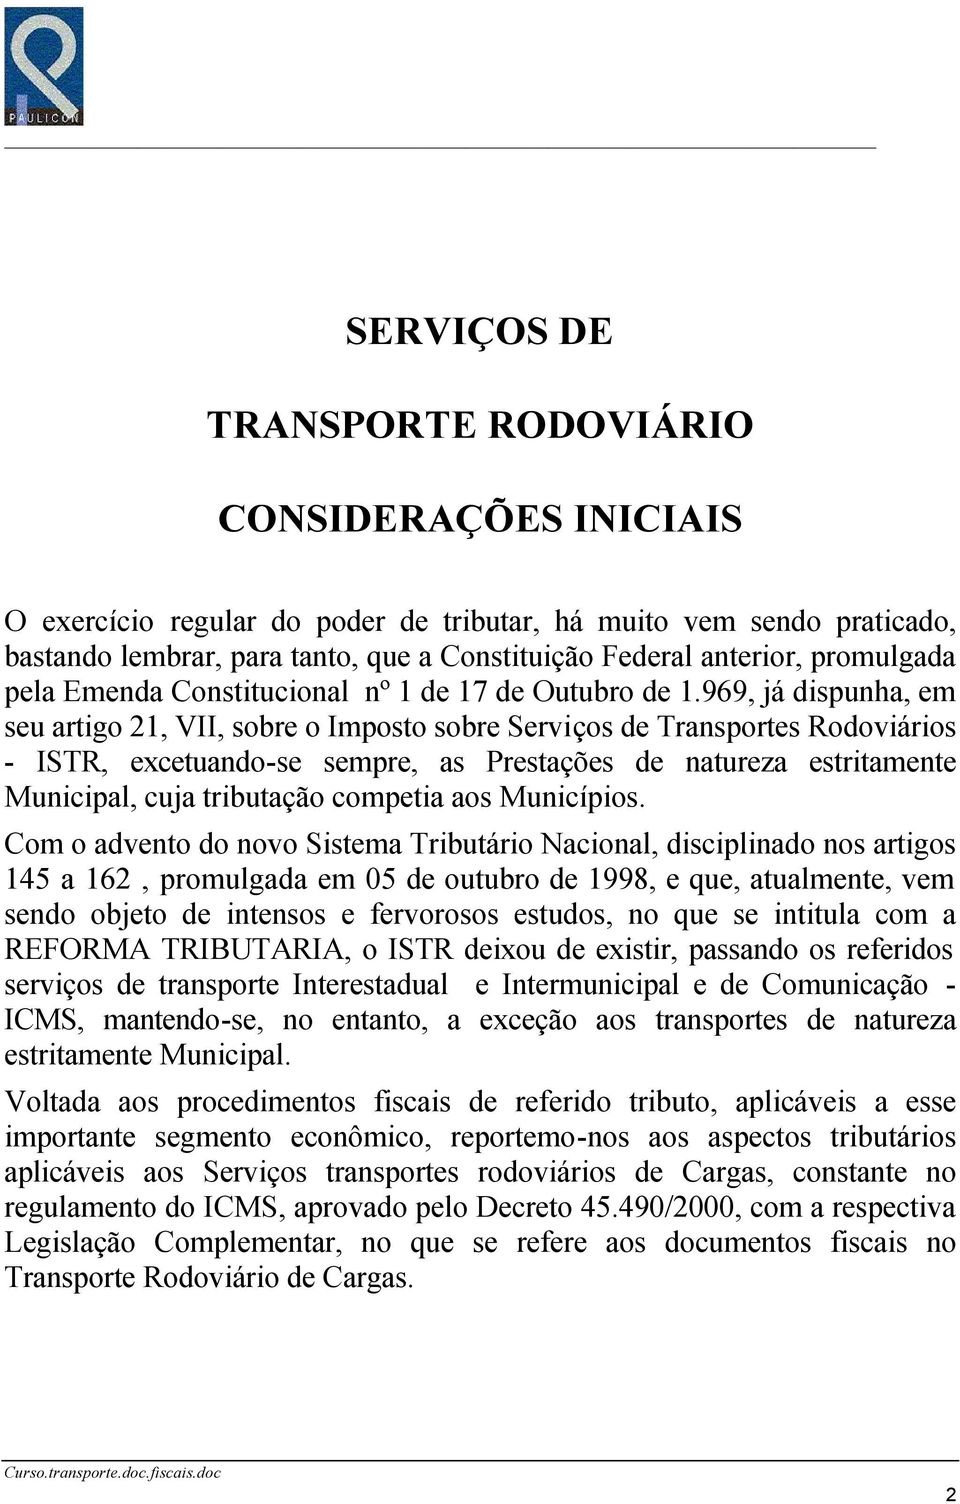 969, já dispunha, em seu artigo 21, VII, sobre o Imposto sobre Serviços de Transportes Rodoviários - ISTR, excetuando-se sempre, as Prestações de natureza estritamente Municipal, cuja tributação